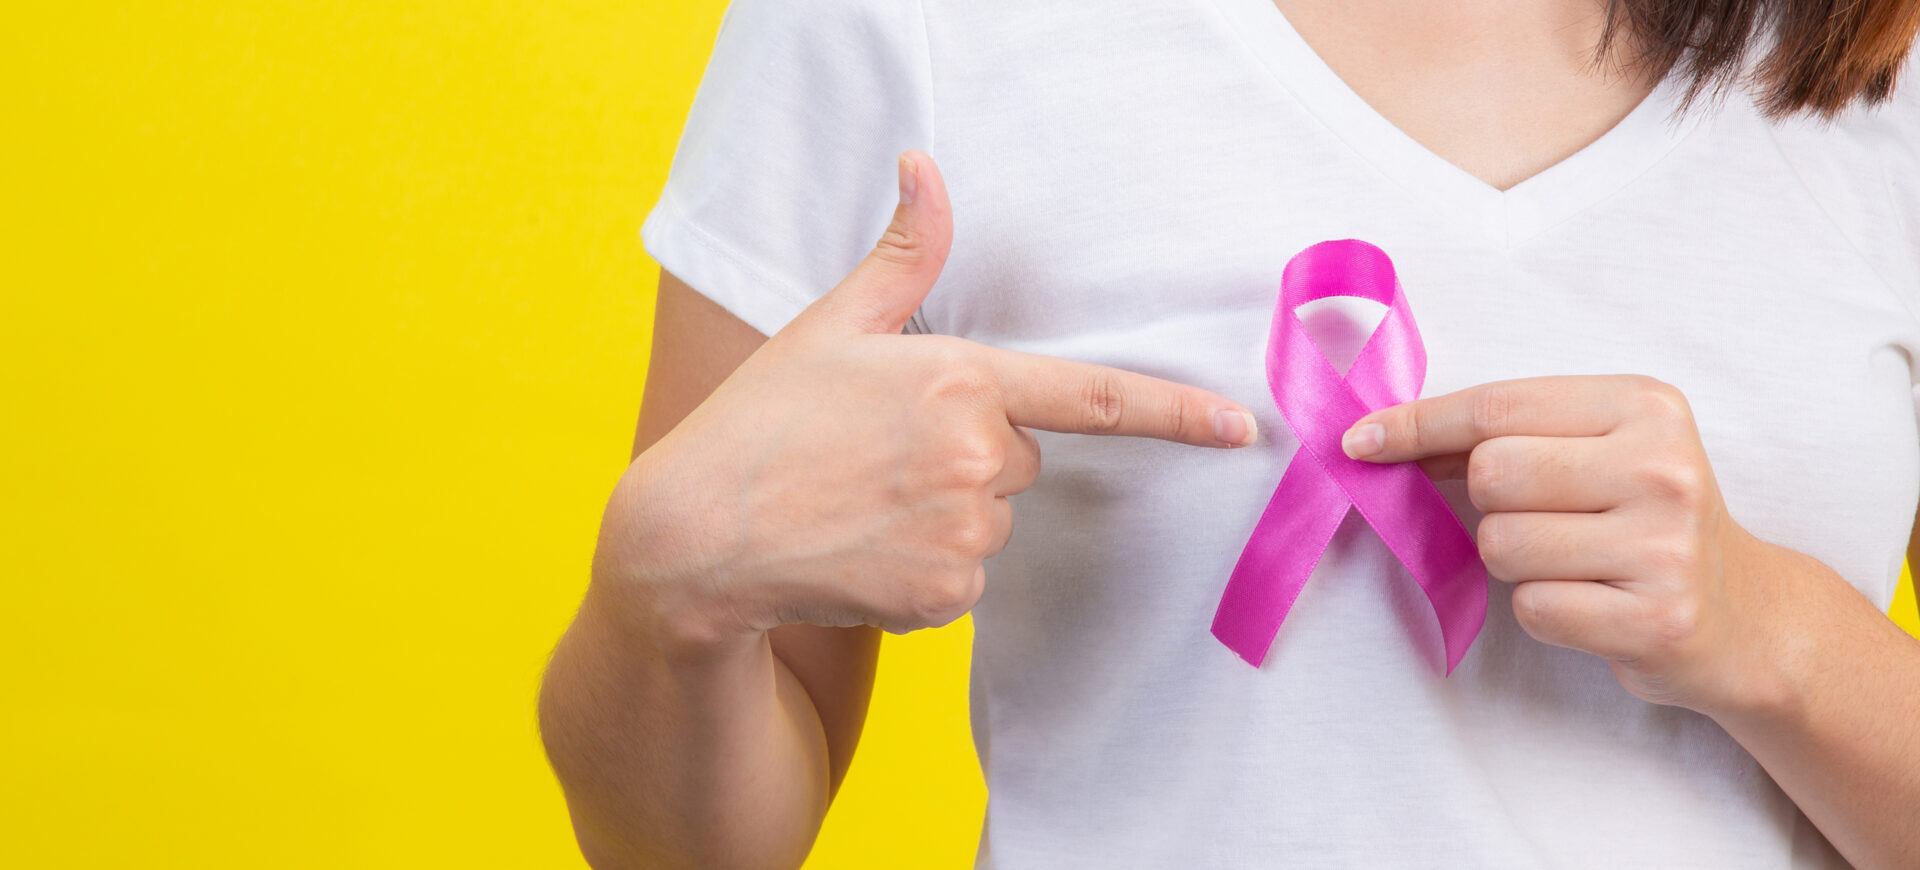 Cancerul de sân: ce este și care sunt semnalele de alarmă